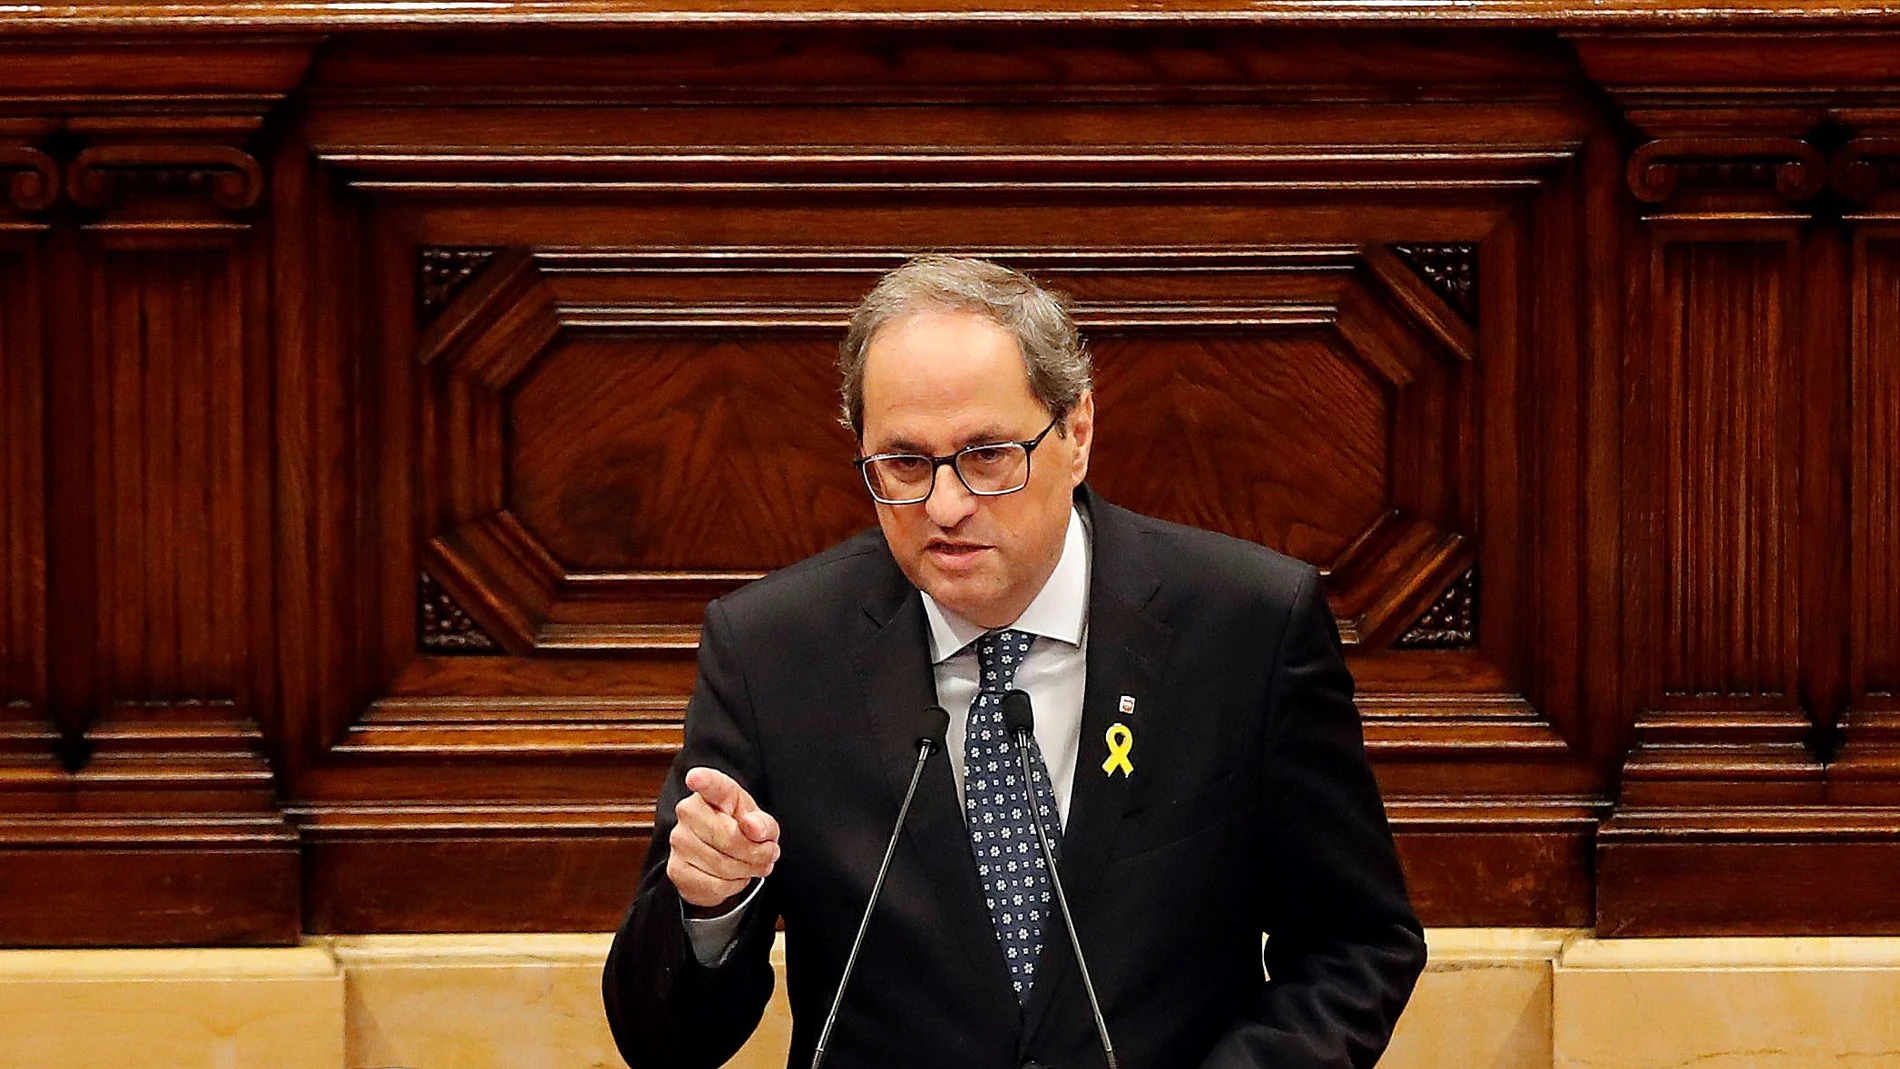 El presidente de la Generalitat, Quim Torra, durante su comparecencia a petición propia ante el pleno del Parlament